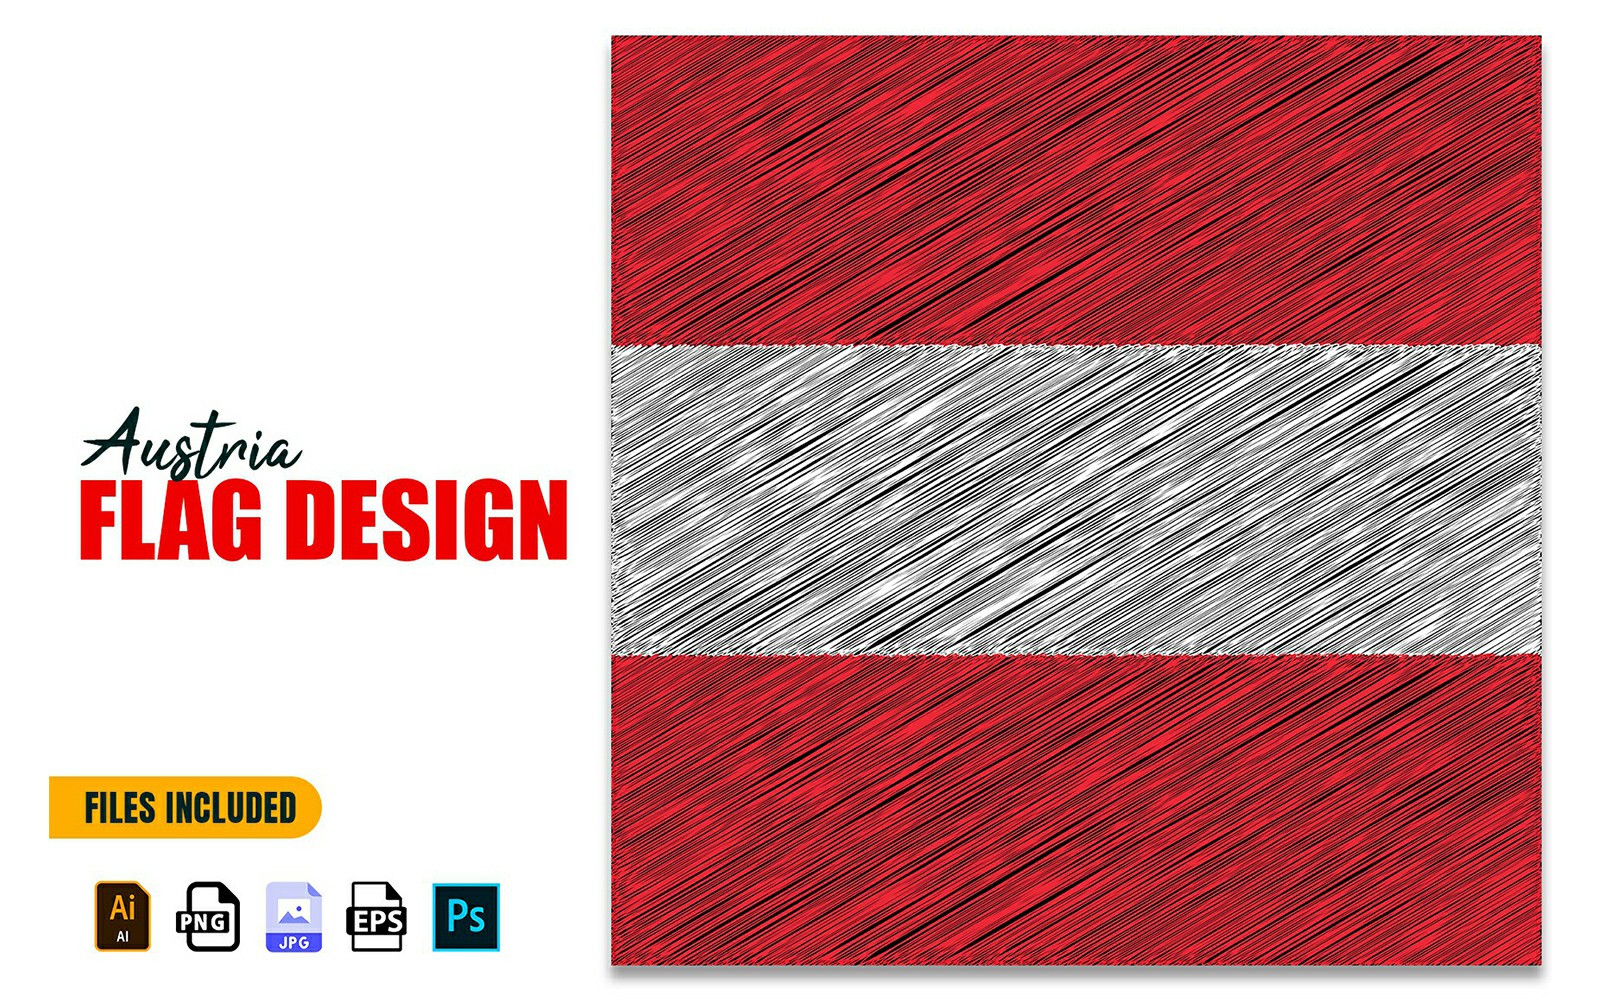 26 October Austria National Day Flag Design Illustration